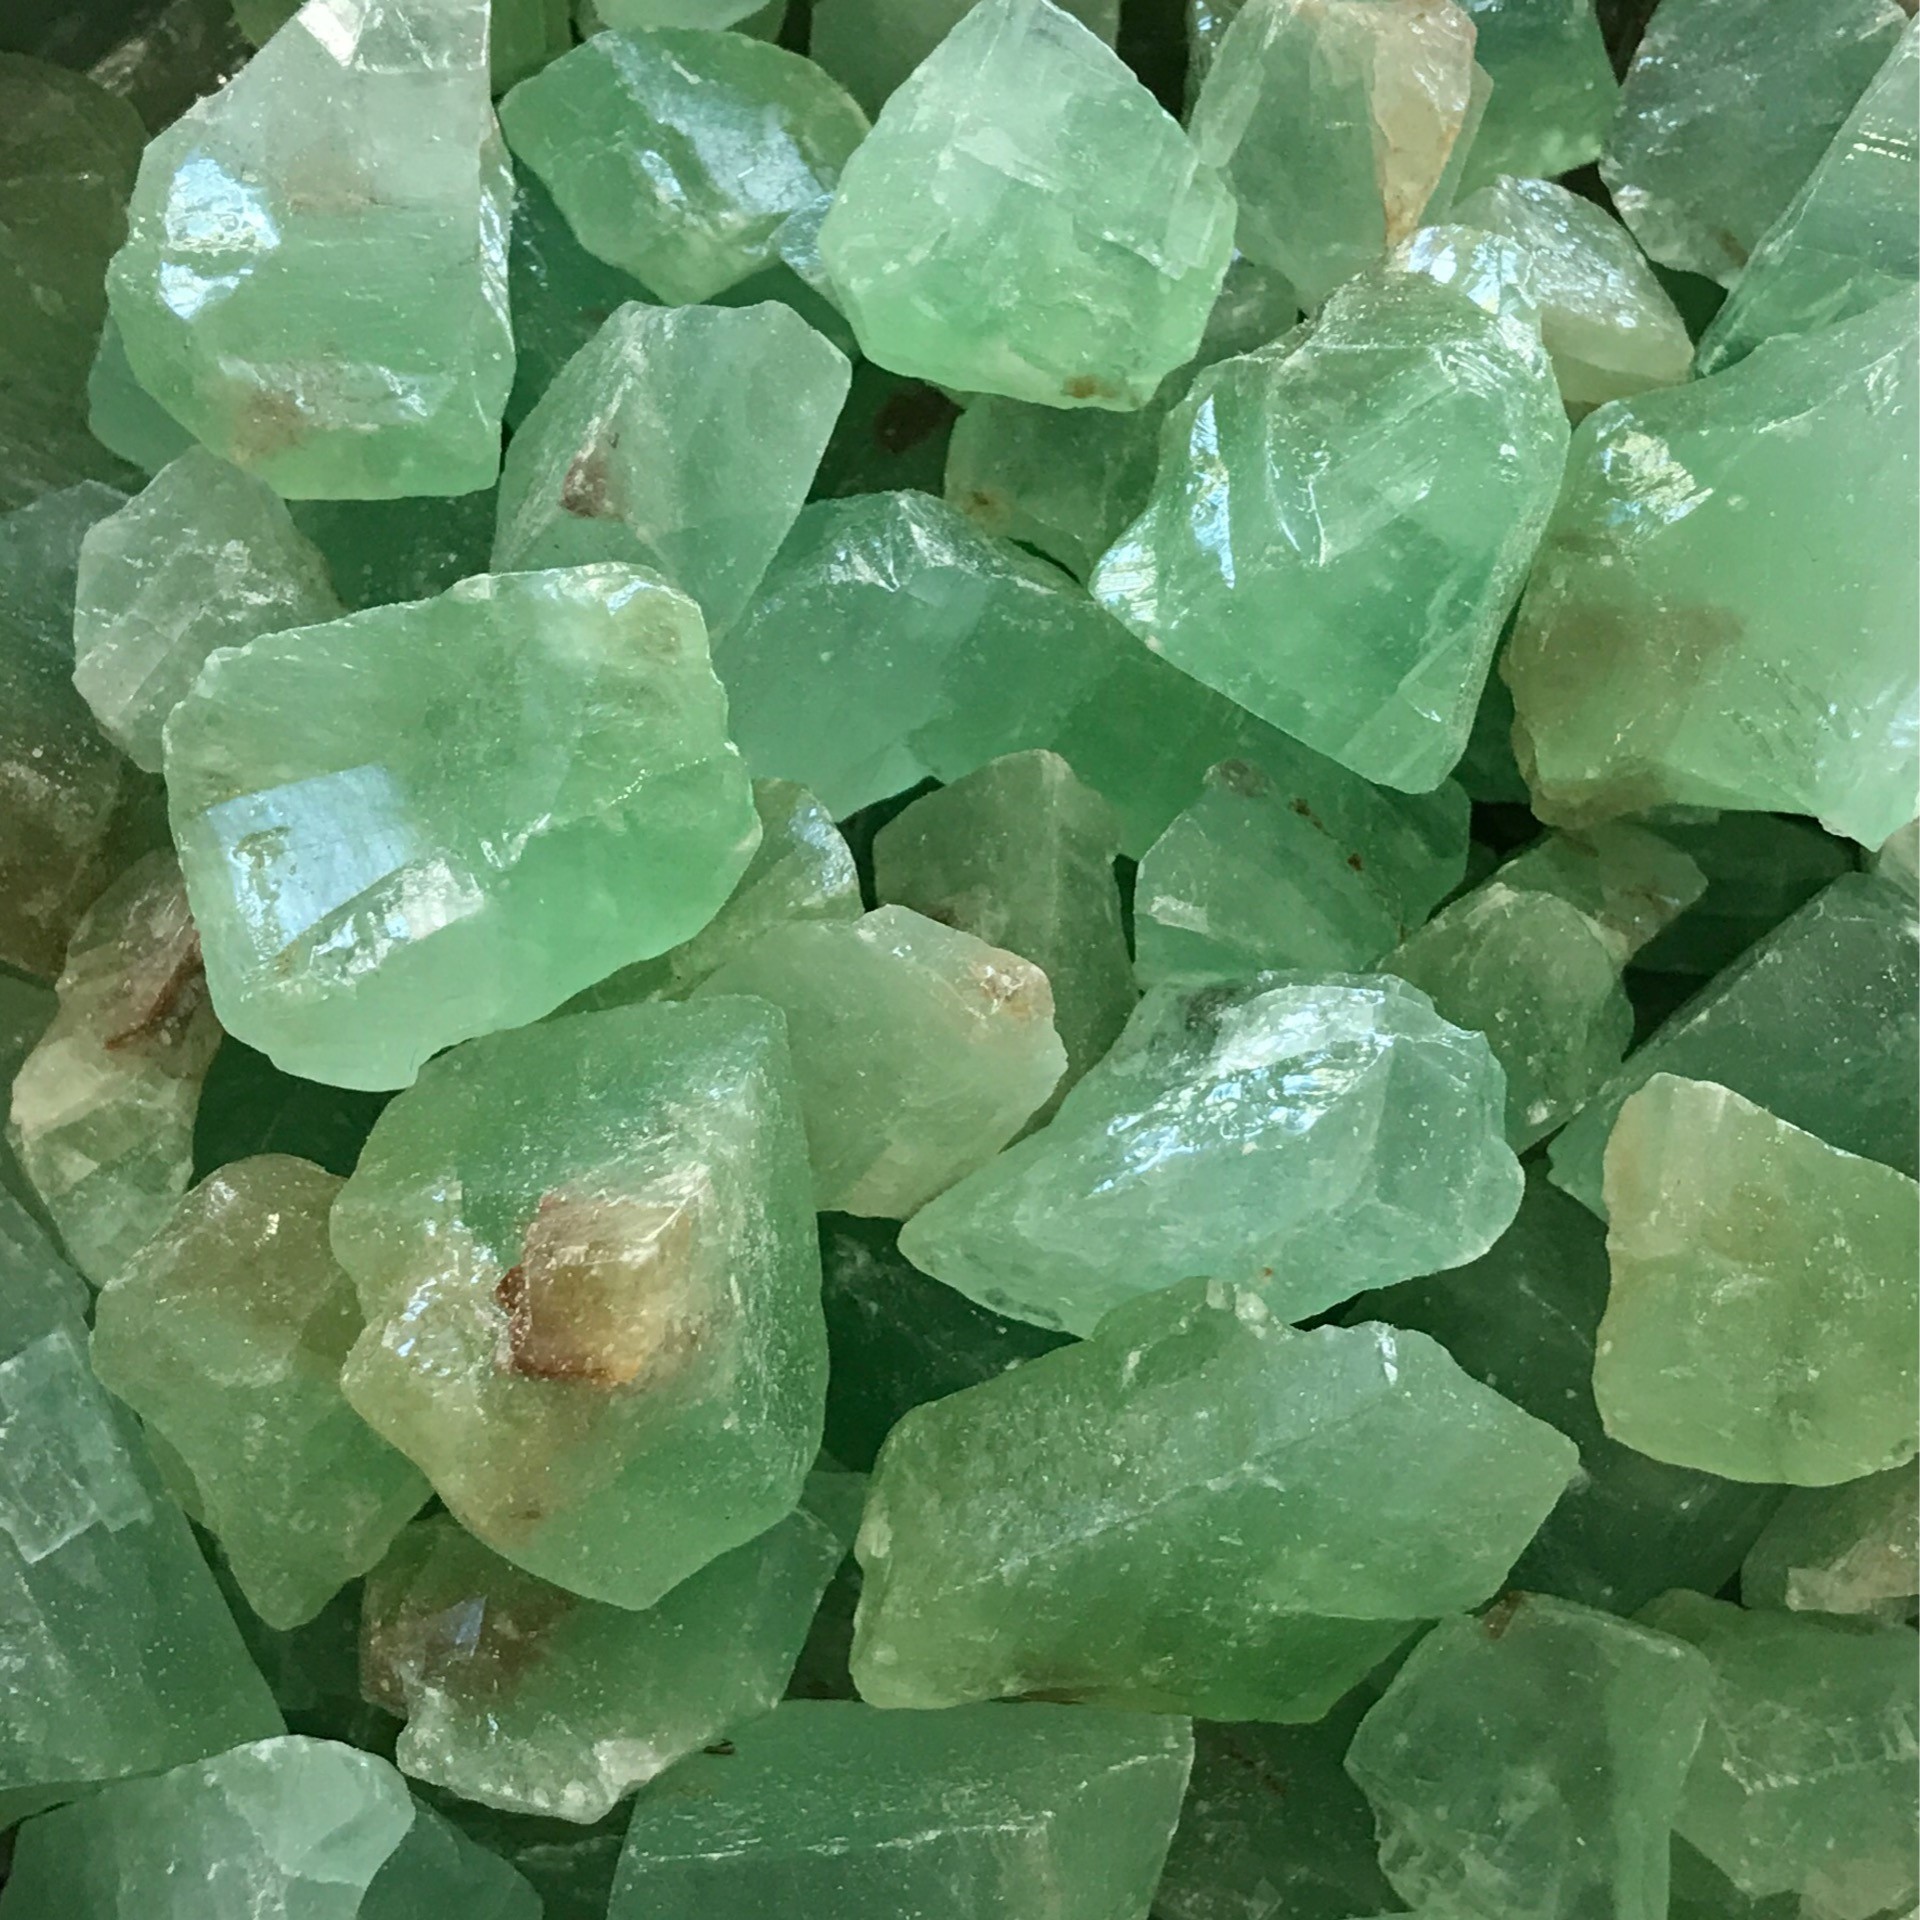 سنگ کلسیت سبز یکی از سنگ های چاکرای قلب